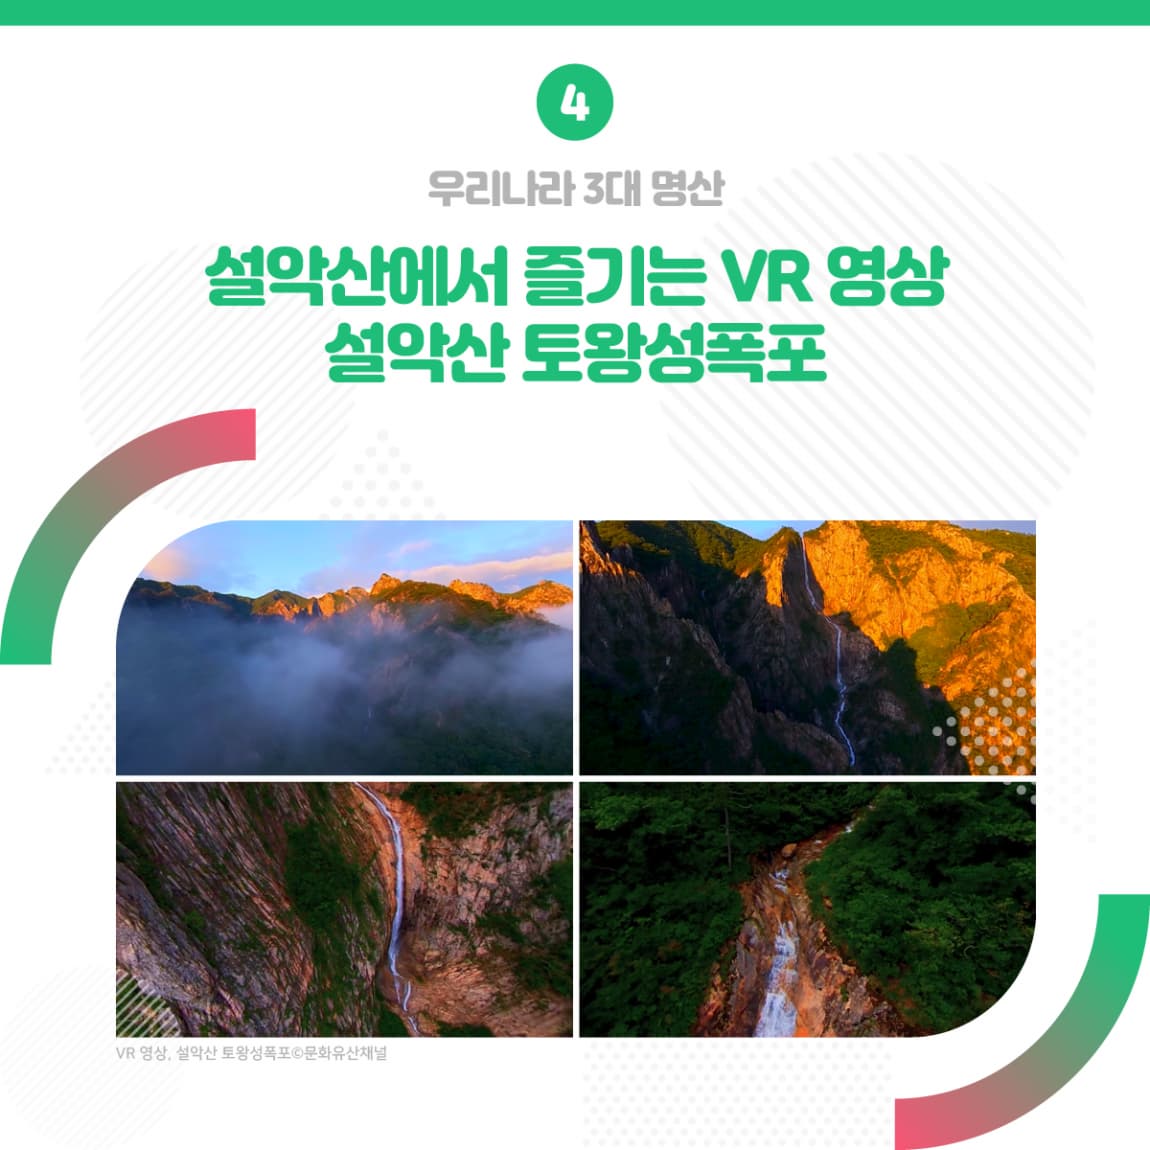 4.우리나라 3대 명산 설악산에서 즐기는 VR 영상 설악산 토왕성폭포